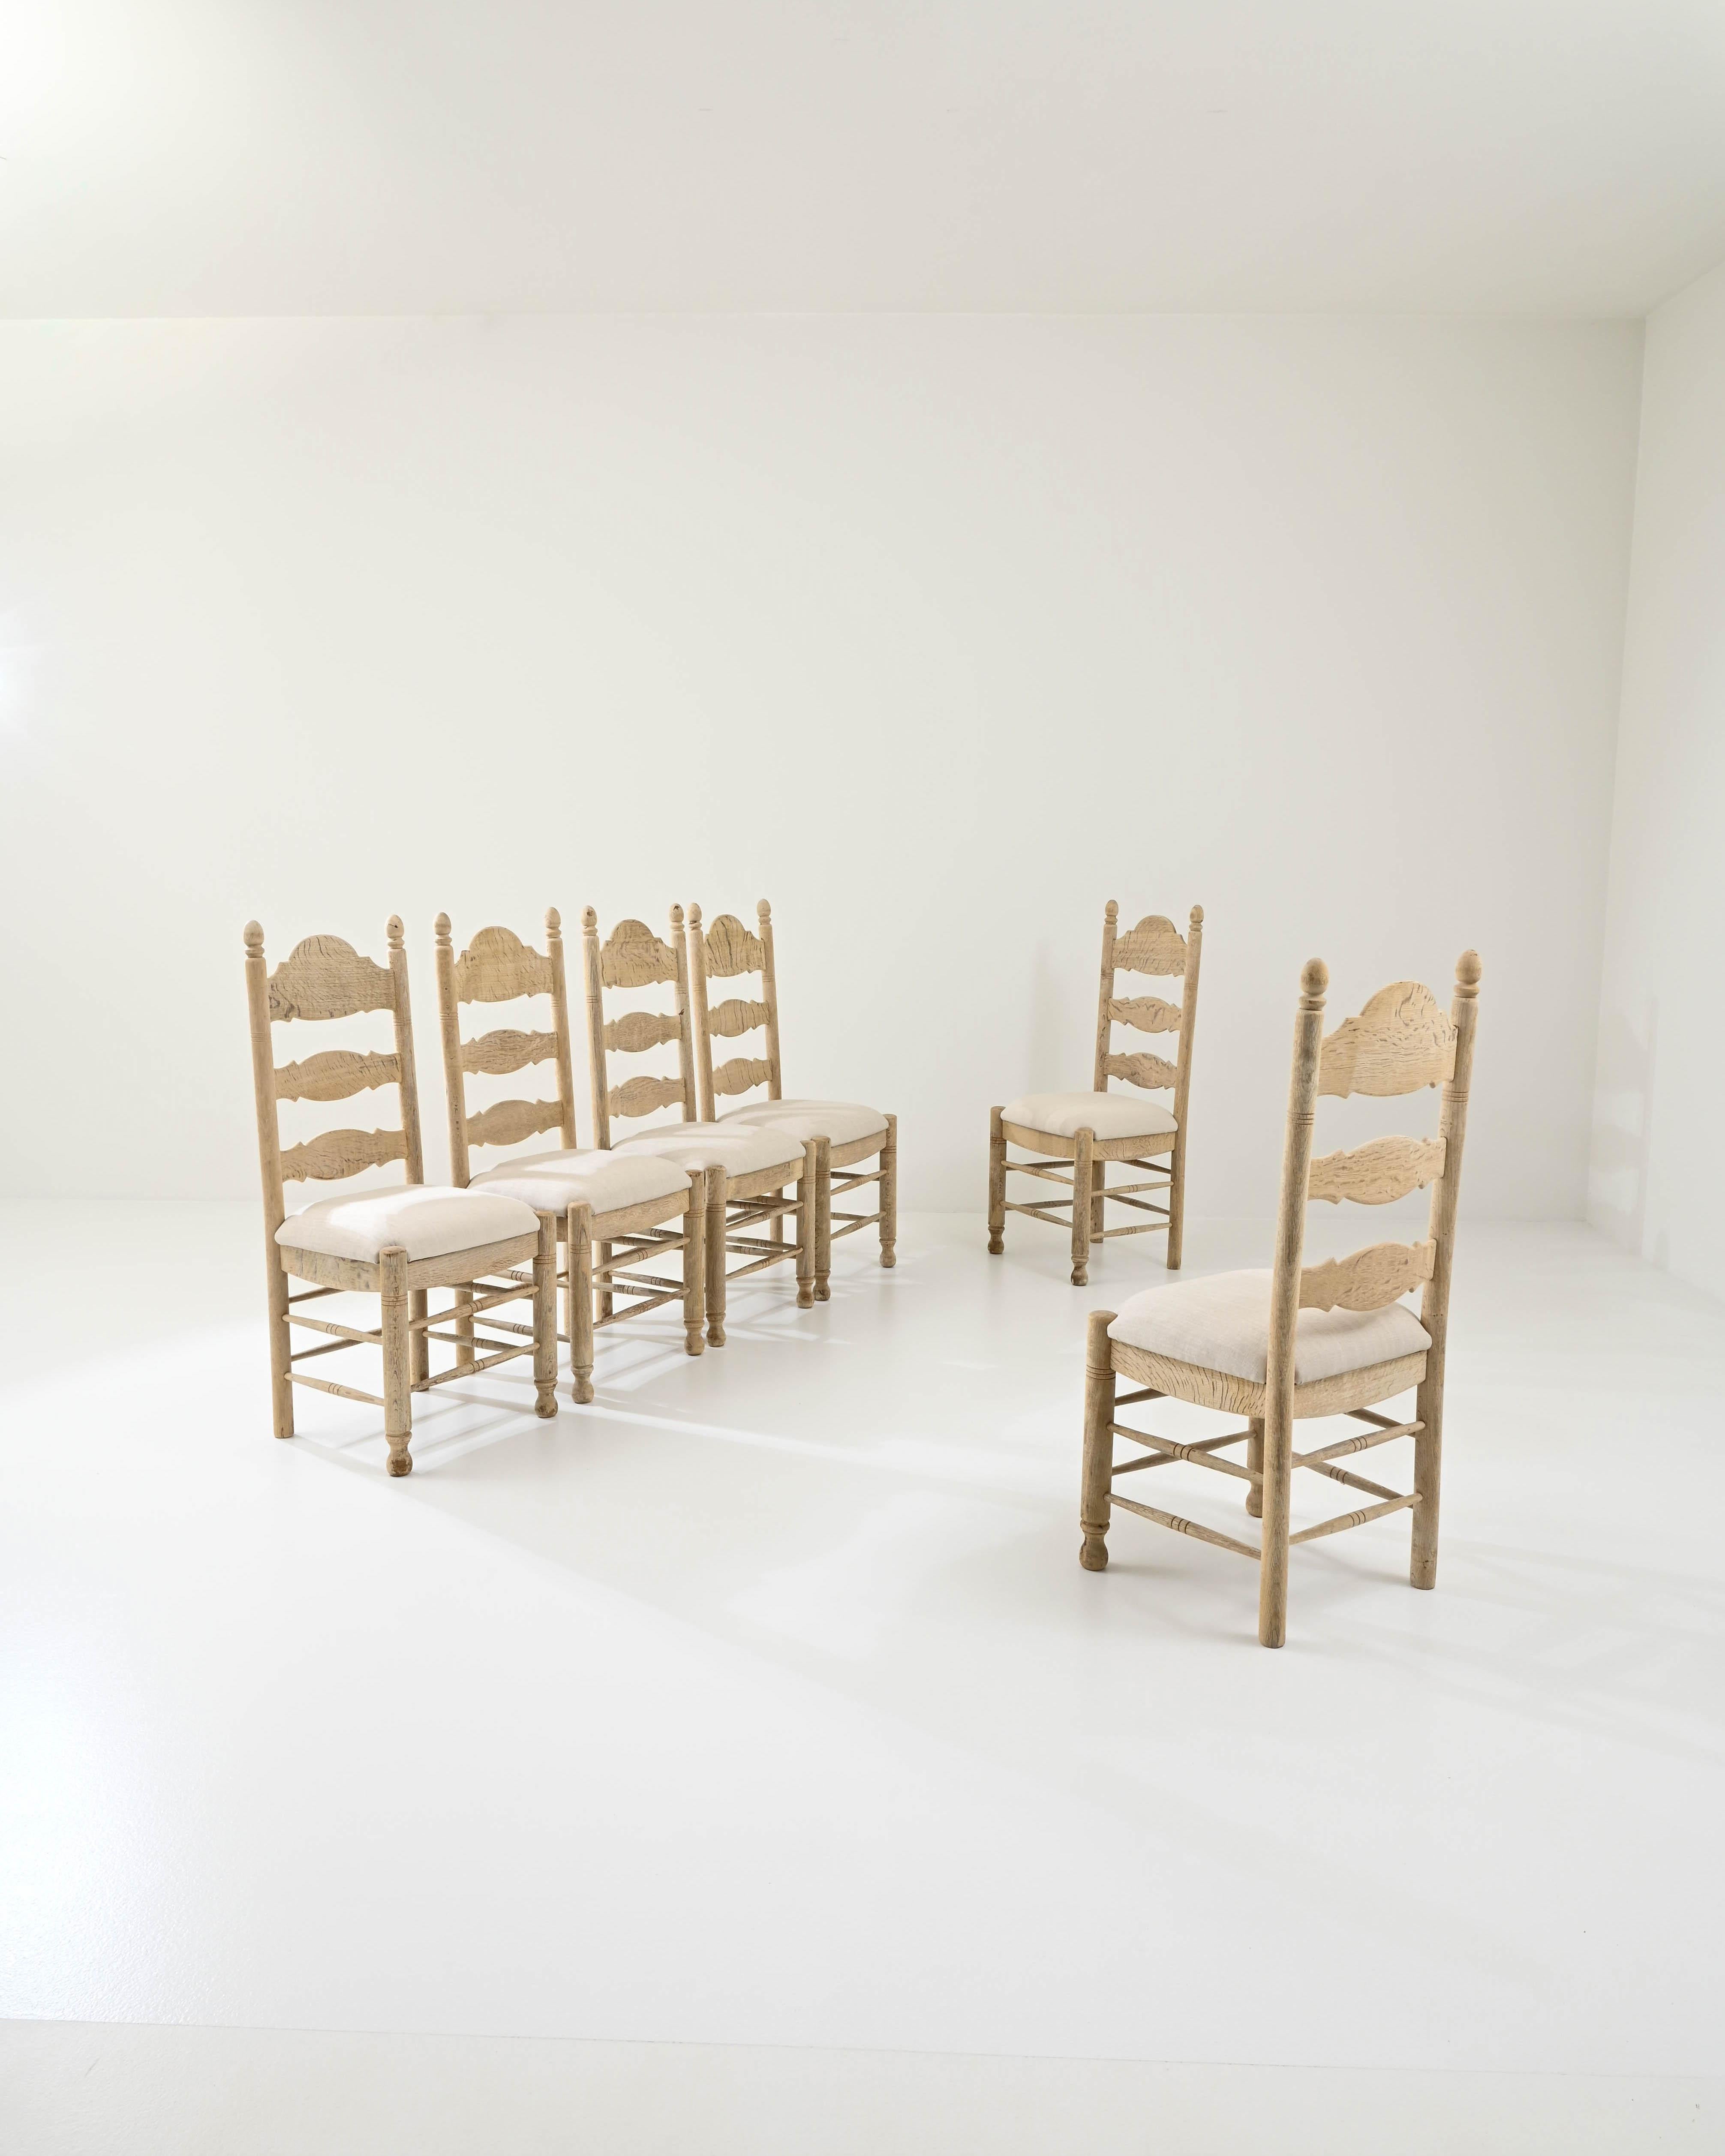 Une silhouette de ferme et une palette de couleurs naturelles apaisantes confèrent à cet ensemble de chaises de salle à manger en bois vintage un charme accueillant. Fabriqués en Belgique au XXe siècle, les dossiers profilés apportent une touche